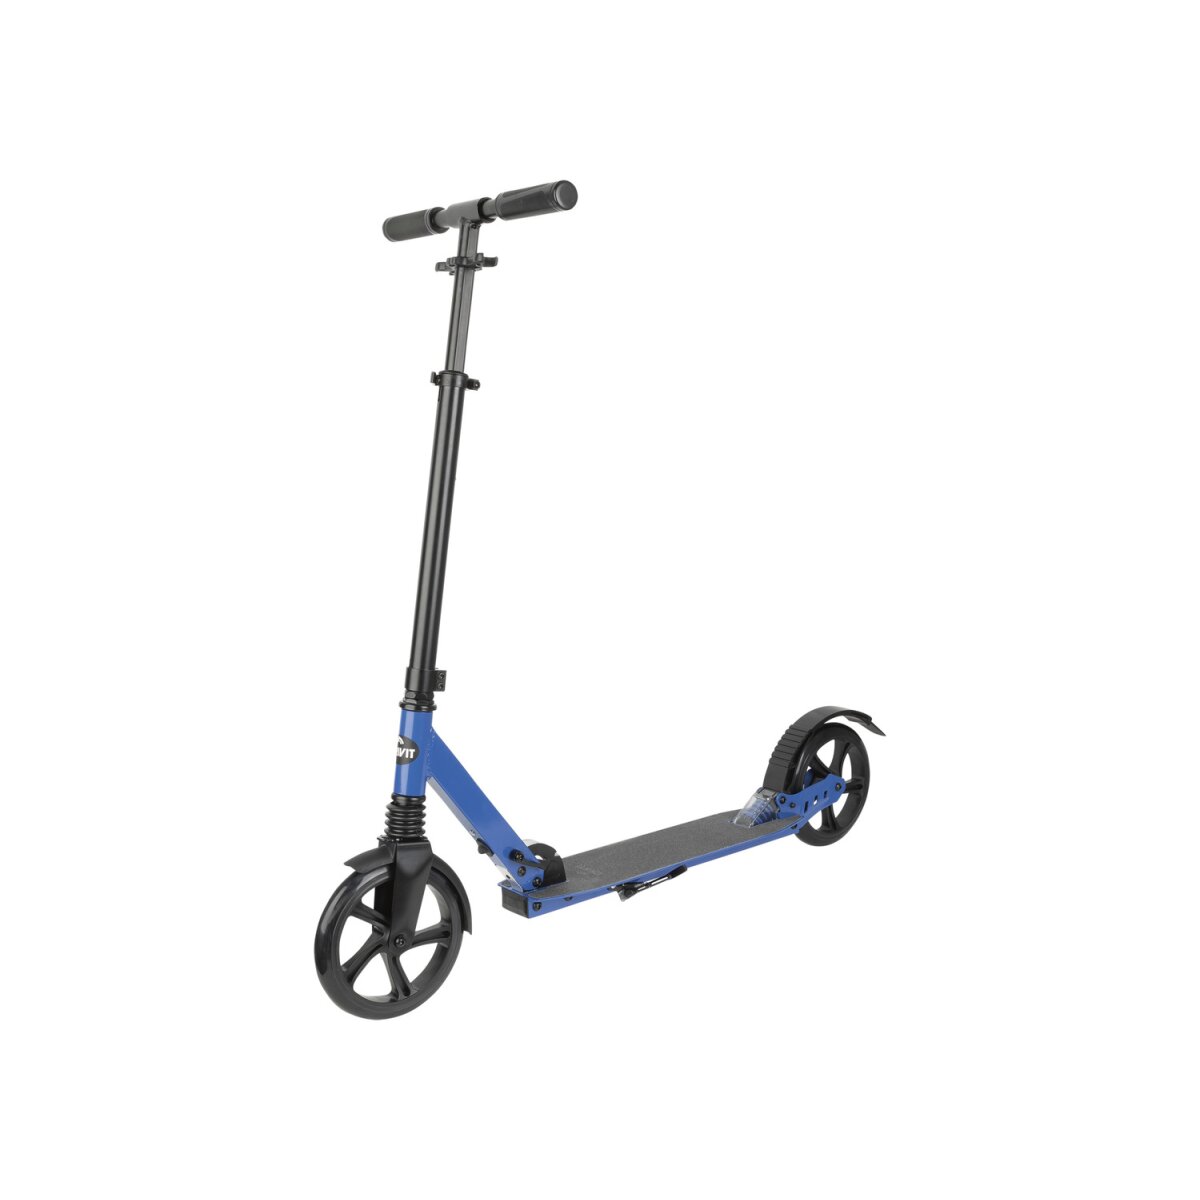 CRIVIT Big-Wheel-Scooter, mit Aluminiumrahmen, ABEC-9-Kugellager - B-Ware,  29,99 €